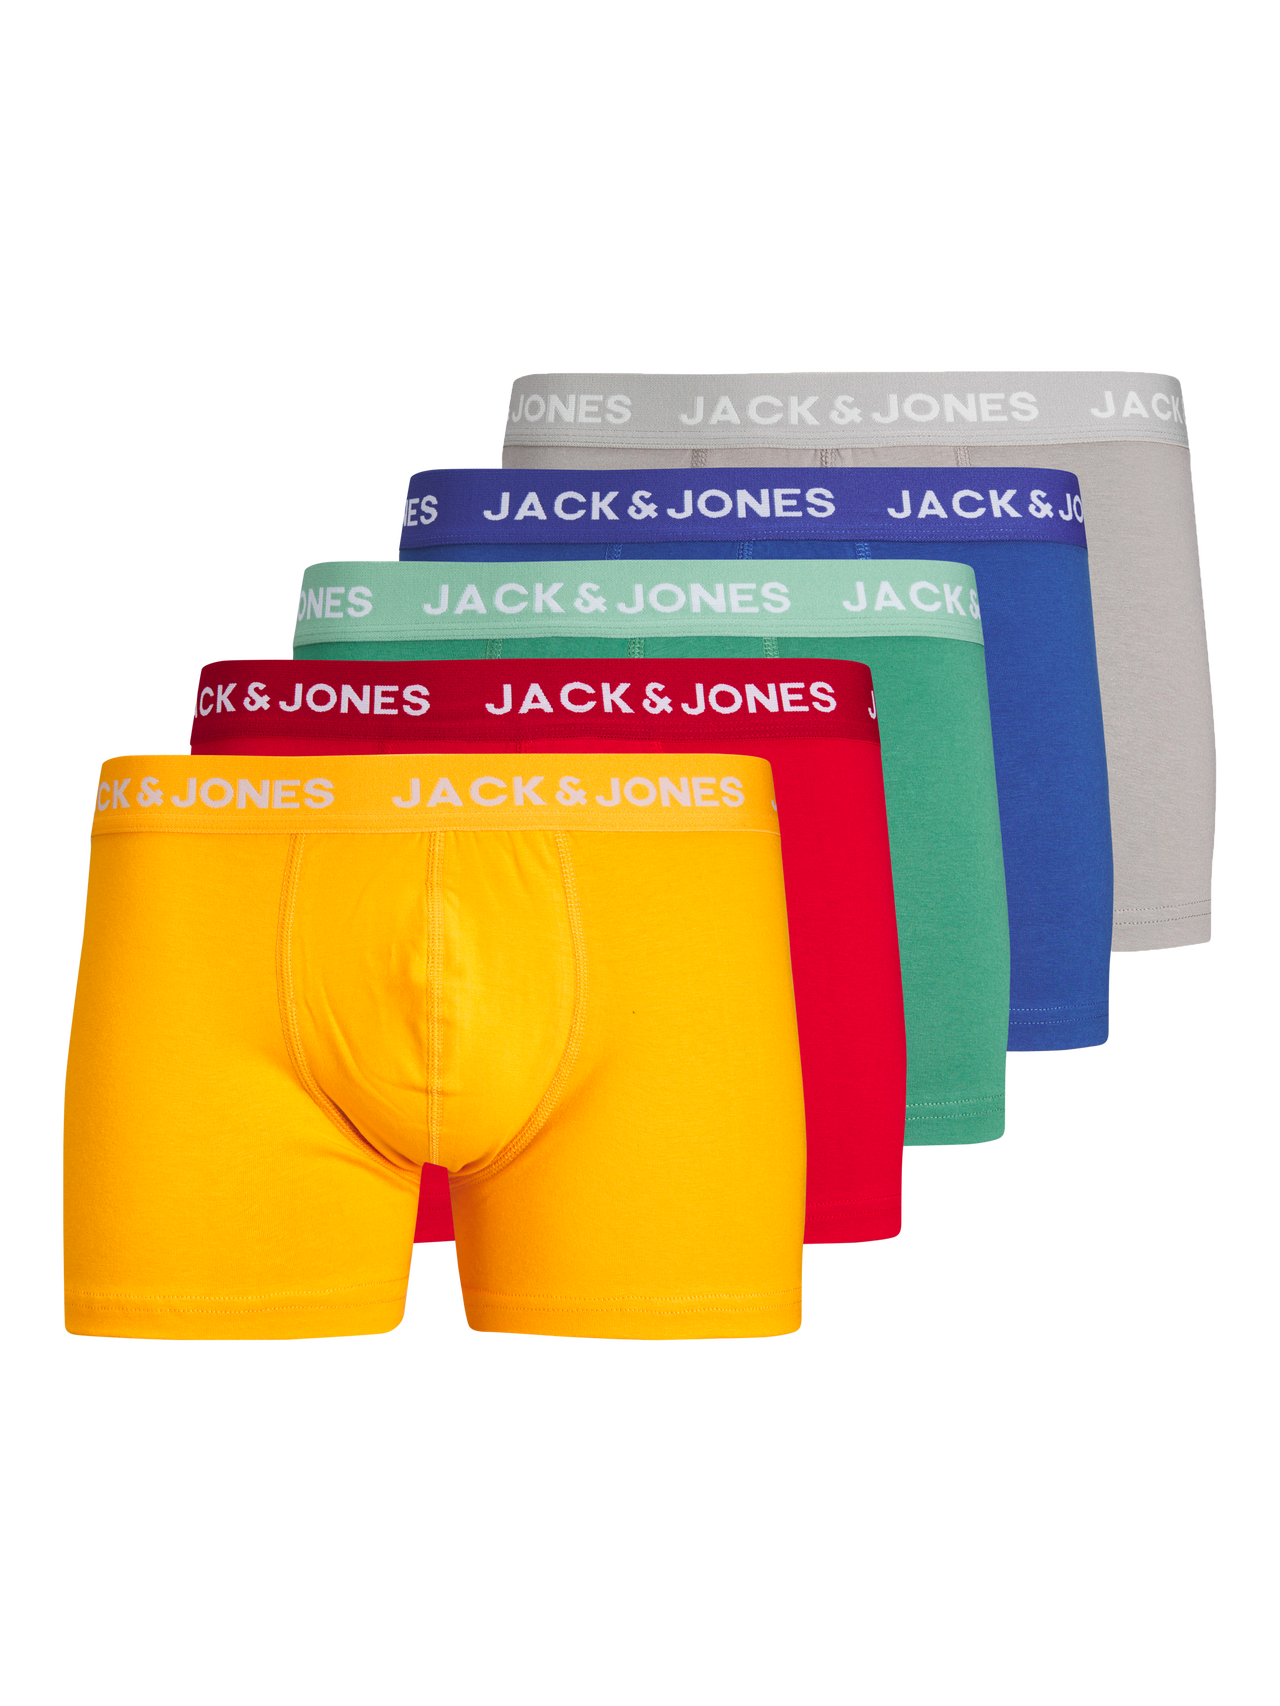 Jack & Jones Plus Size Paquete de 5 Boxers -Tango Red - 12261440